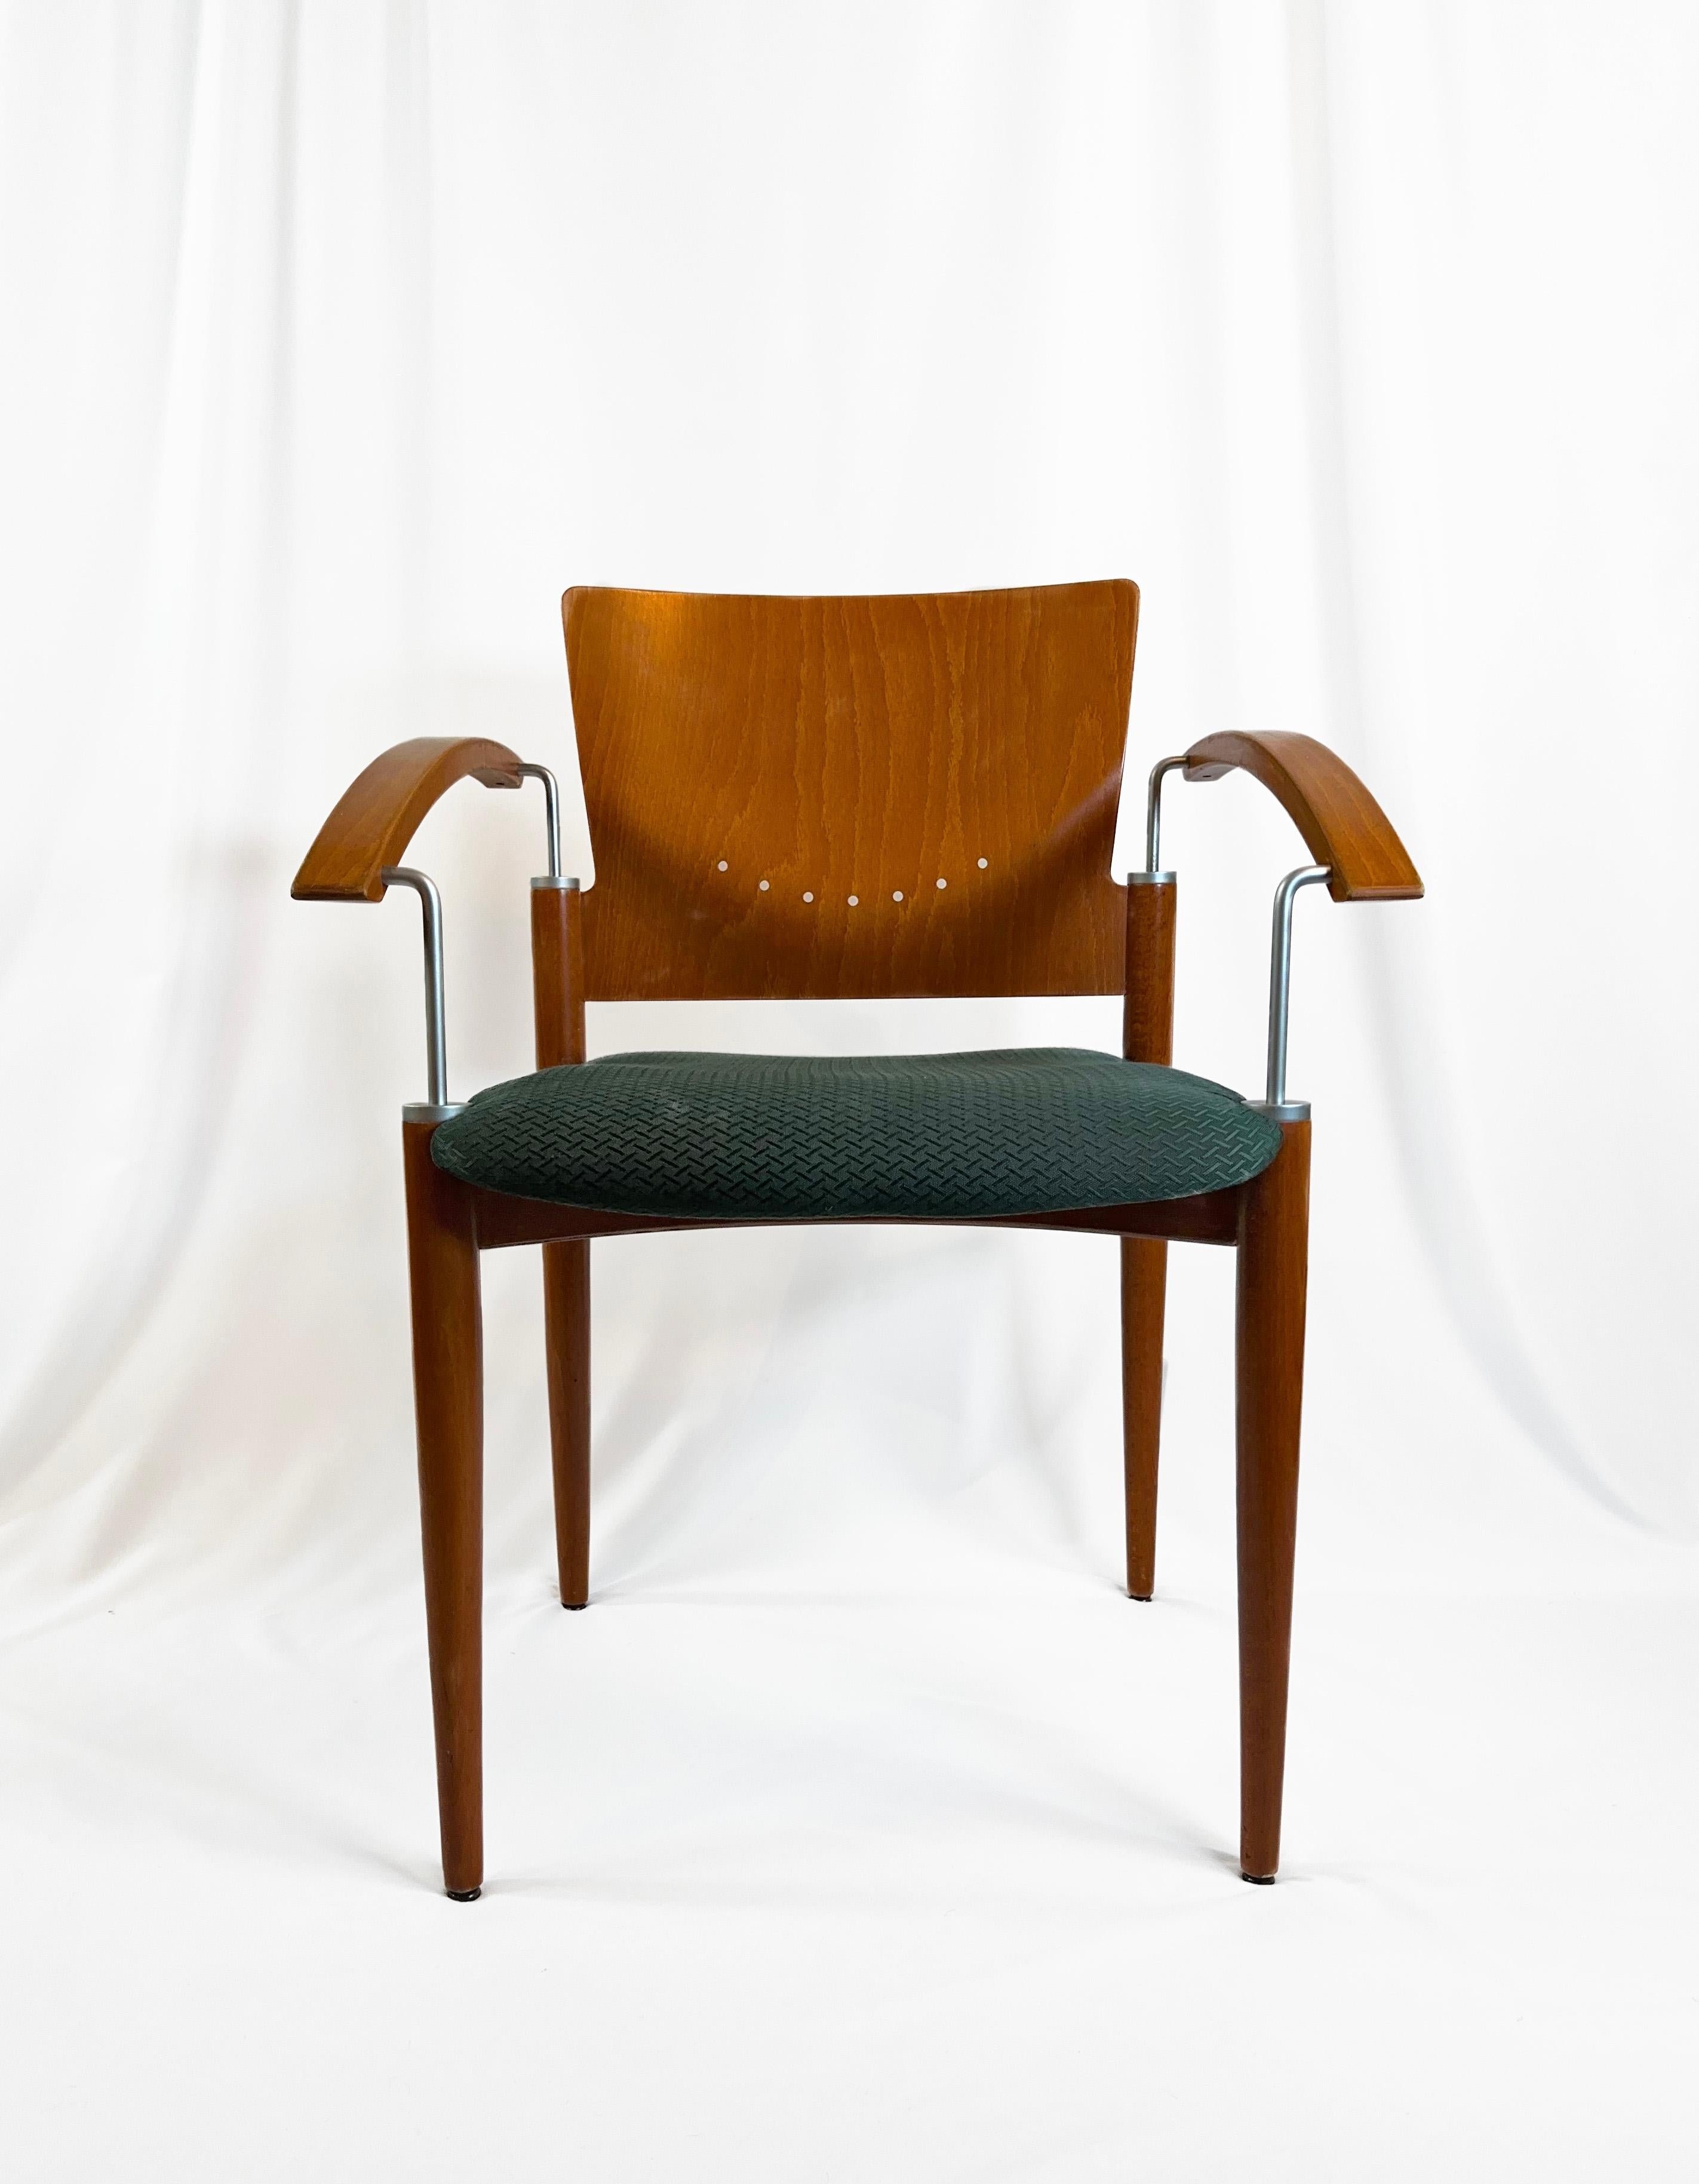 Collection de quatre chaises de salle à manger empilables postmodernes, attribuées à Thonet, vers les années 1980.

Ces chaises ont été fabriquées à partir d'un mélange de plis de hêtre et de bois de hêtre, habilement juxtaposés avec des accents